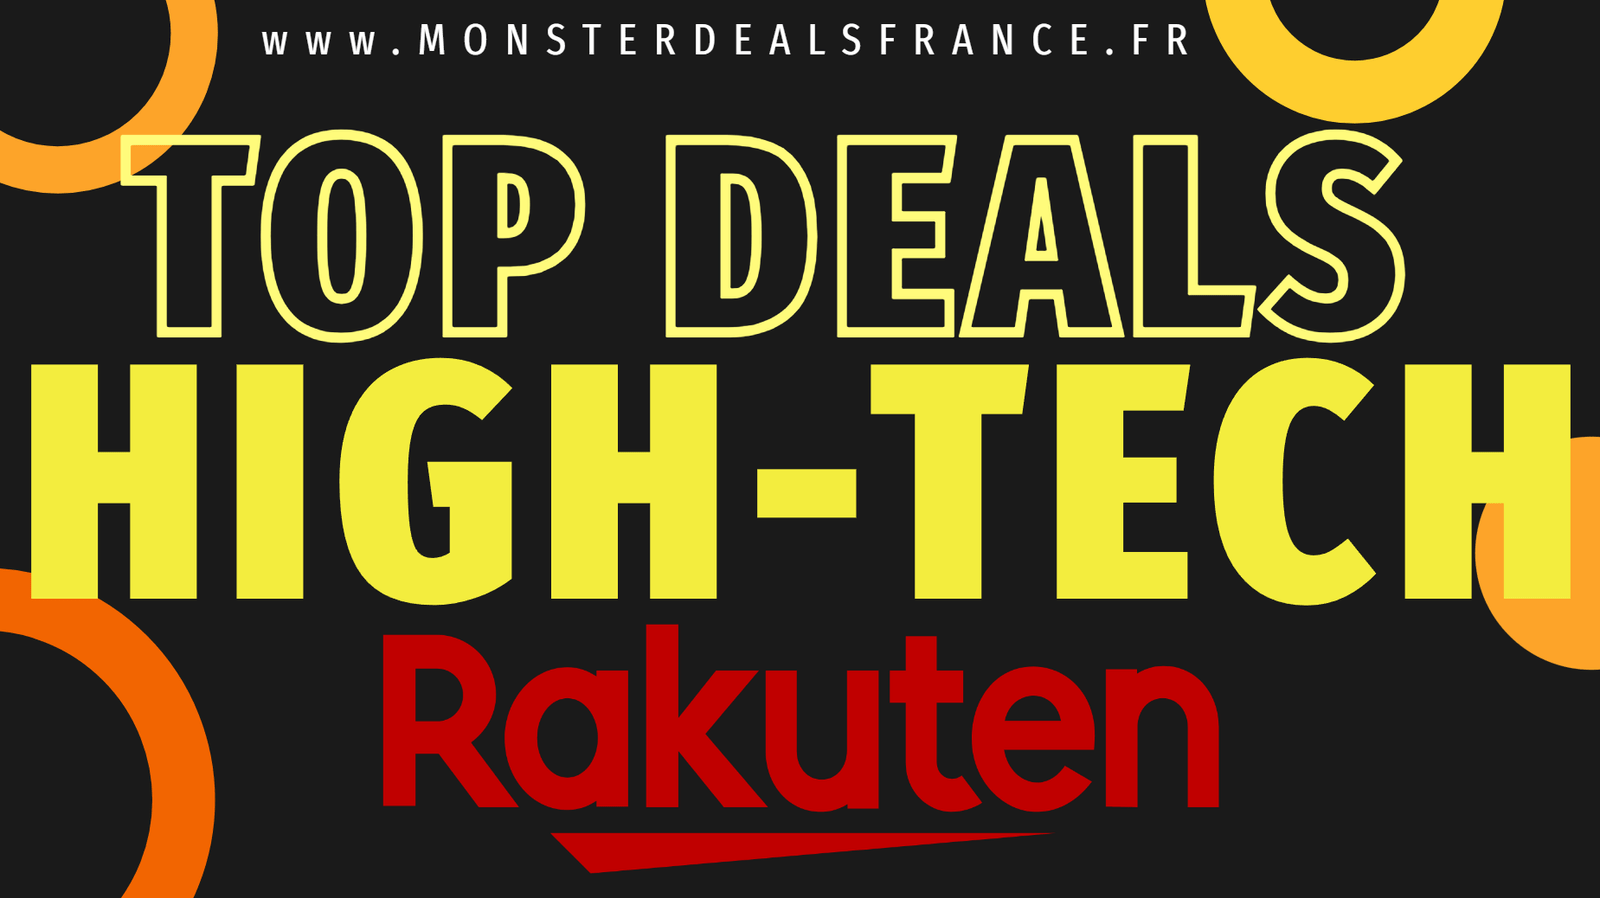 Les Top Deals High tech Rakuten